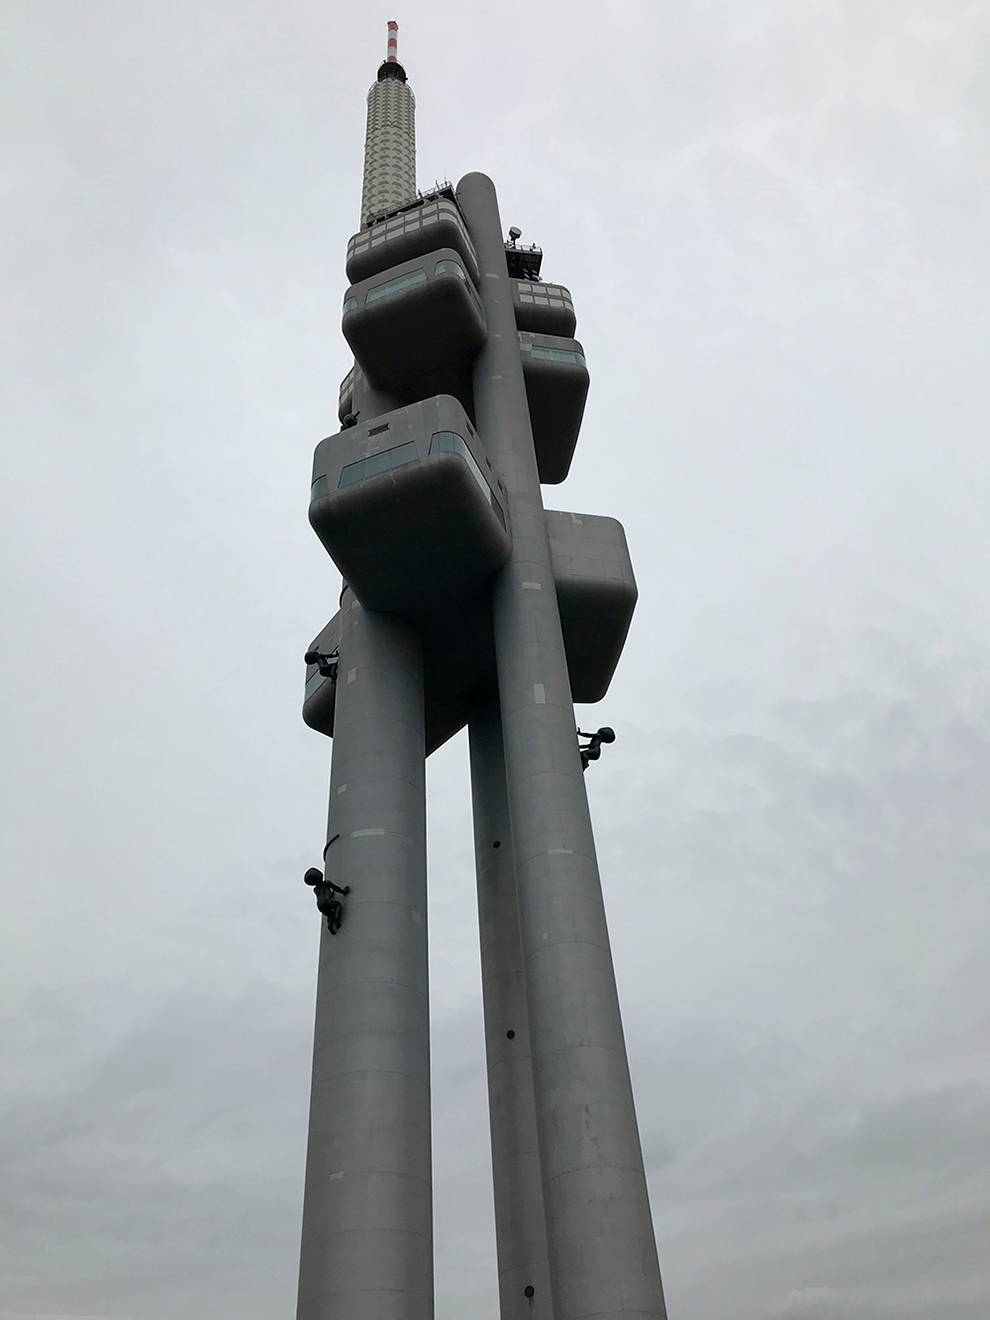 На основаниях башни установлены скульптуры черных младенцев без лиц — знак протеста против абортов от художника Давида Черни